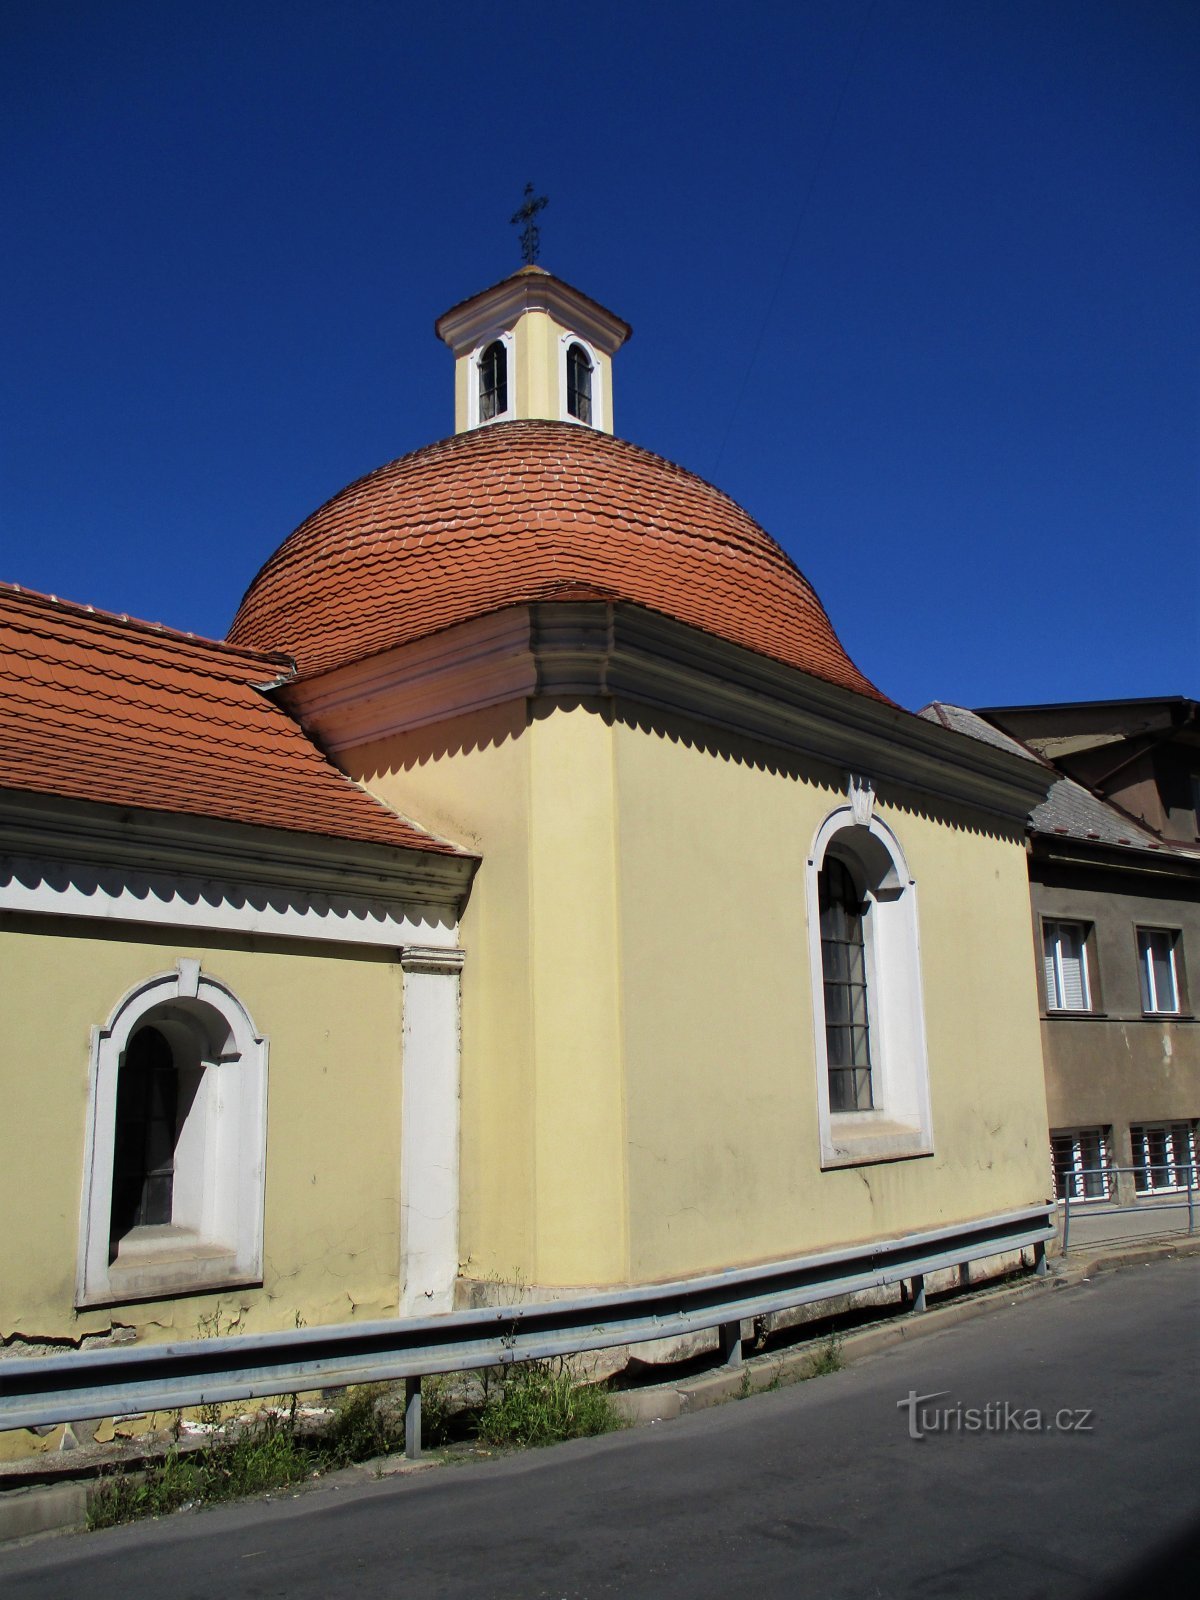 Capilla de St. Josefa (Roudnice nad Labem, 31.7.2020 de julio de XNUMX)